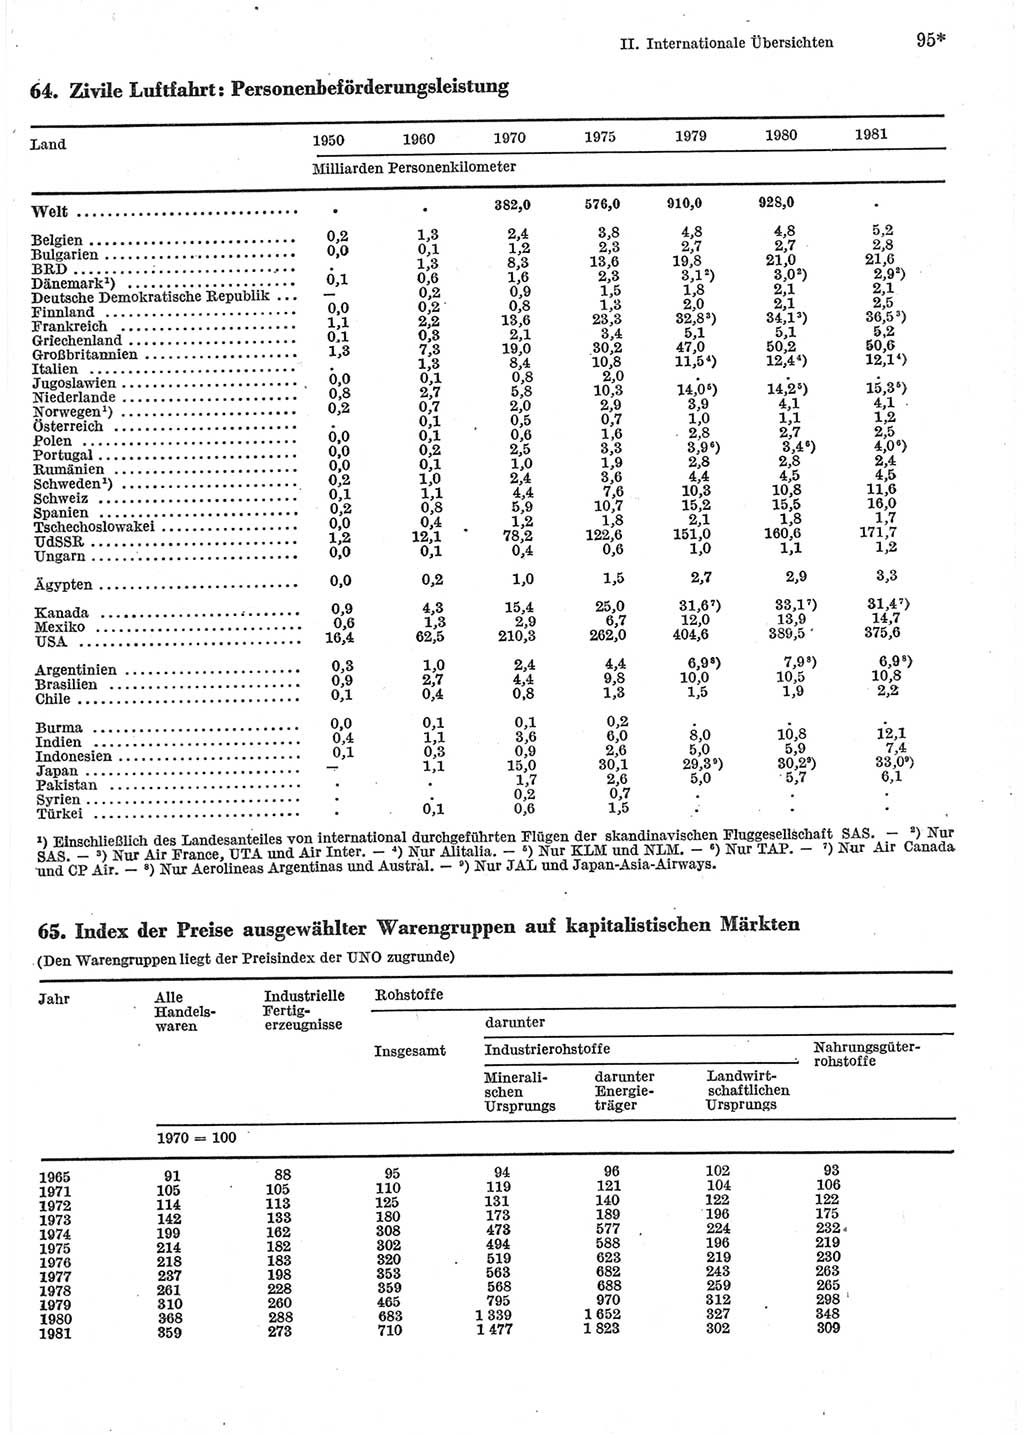 Statistisches Jahrbuch der Deutschen Demokratischen Republik (DDR) 1983, Seite 95 (Stat. Jb. DDR 1983, S. 95)